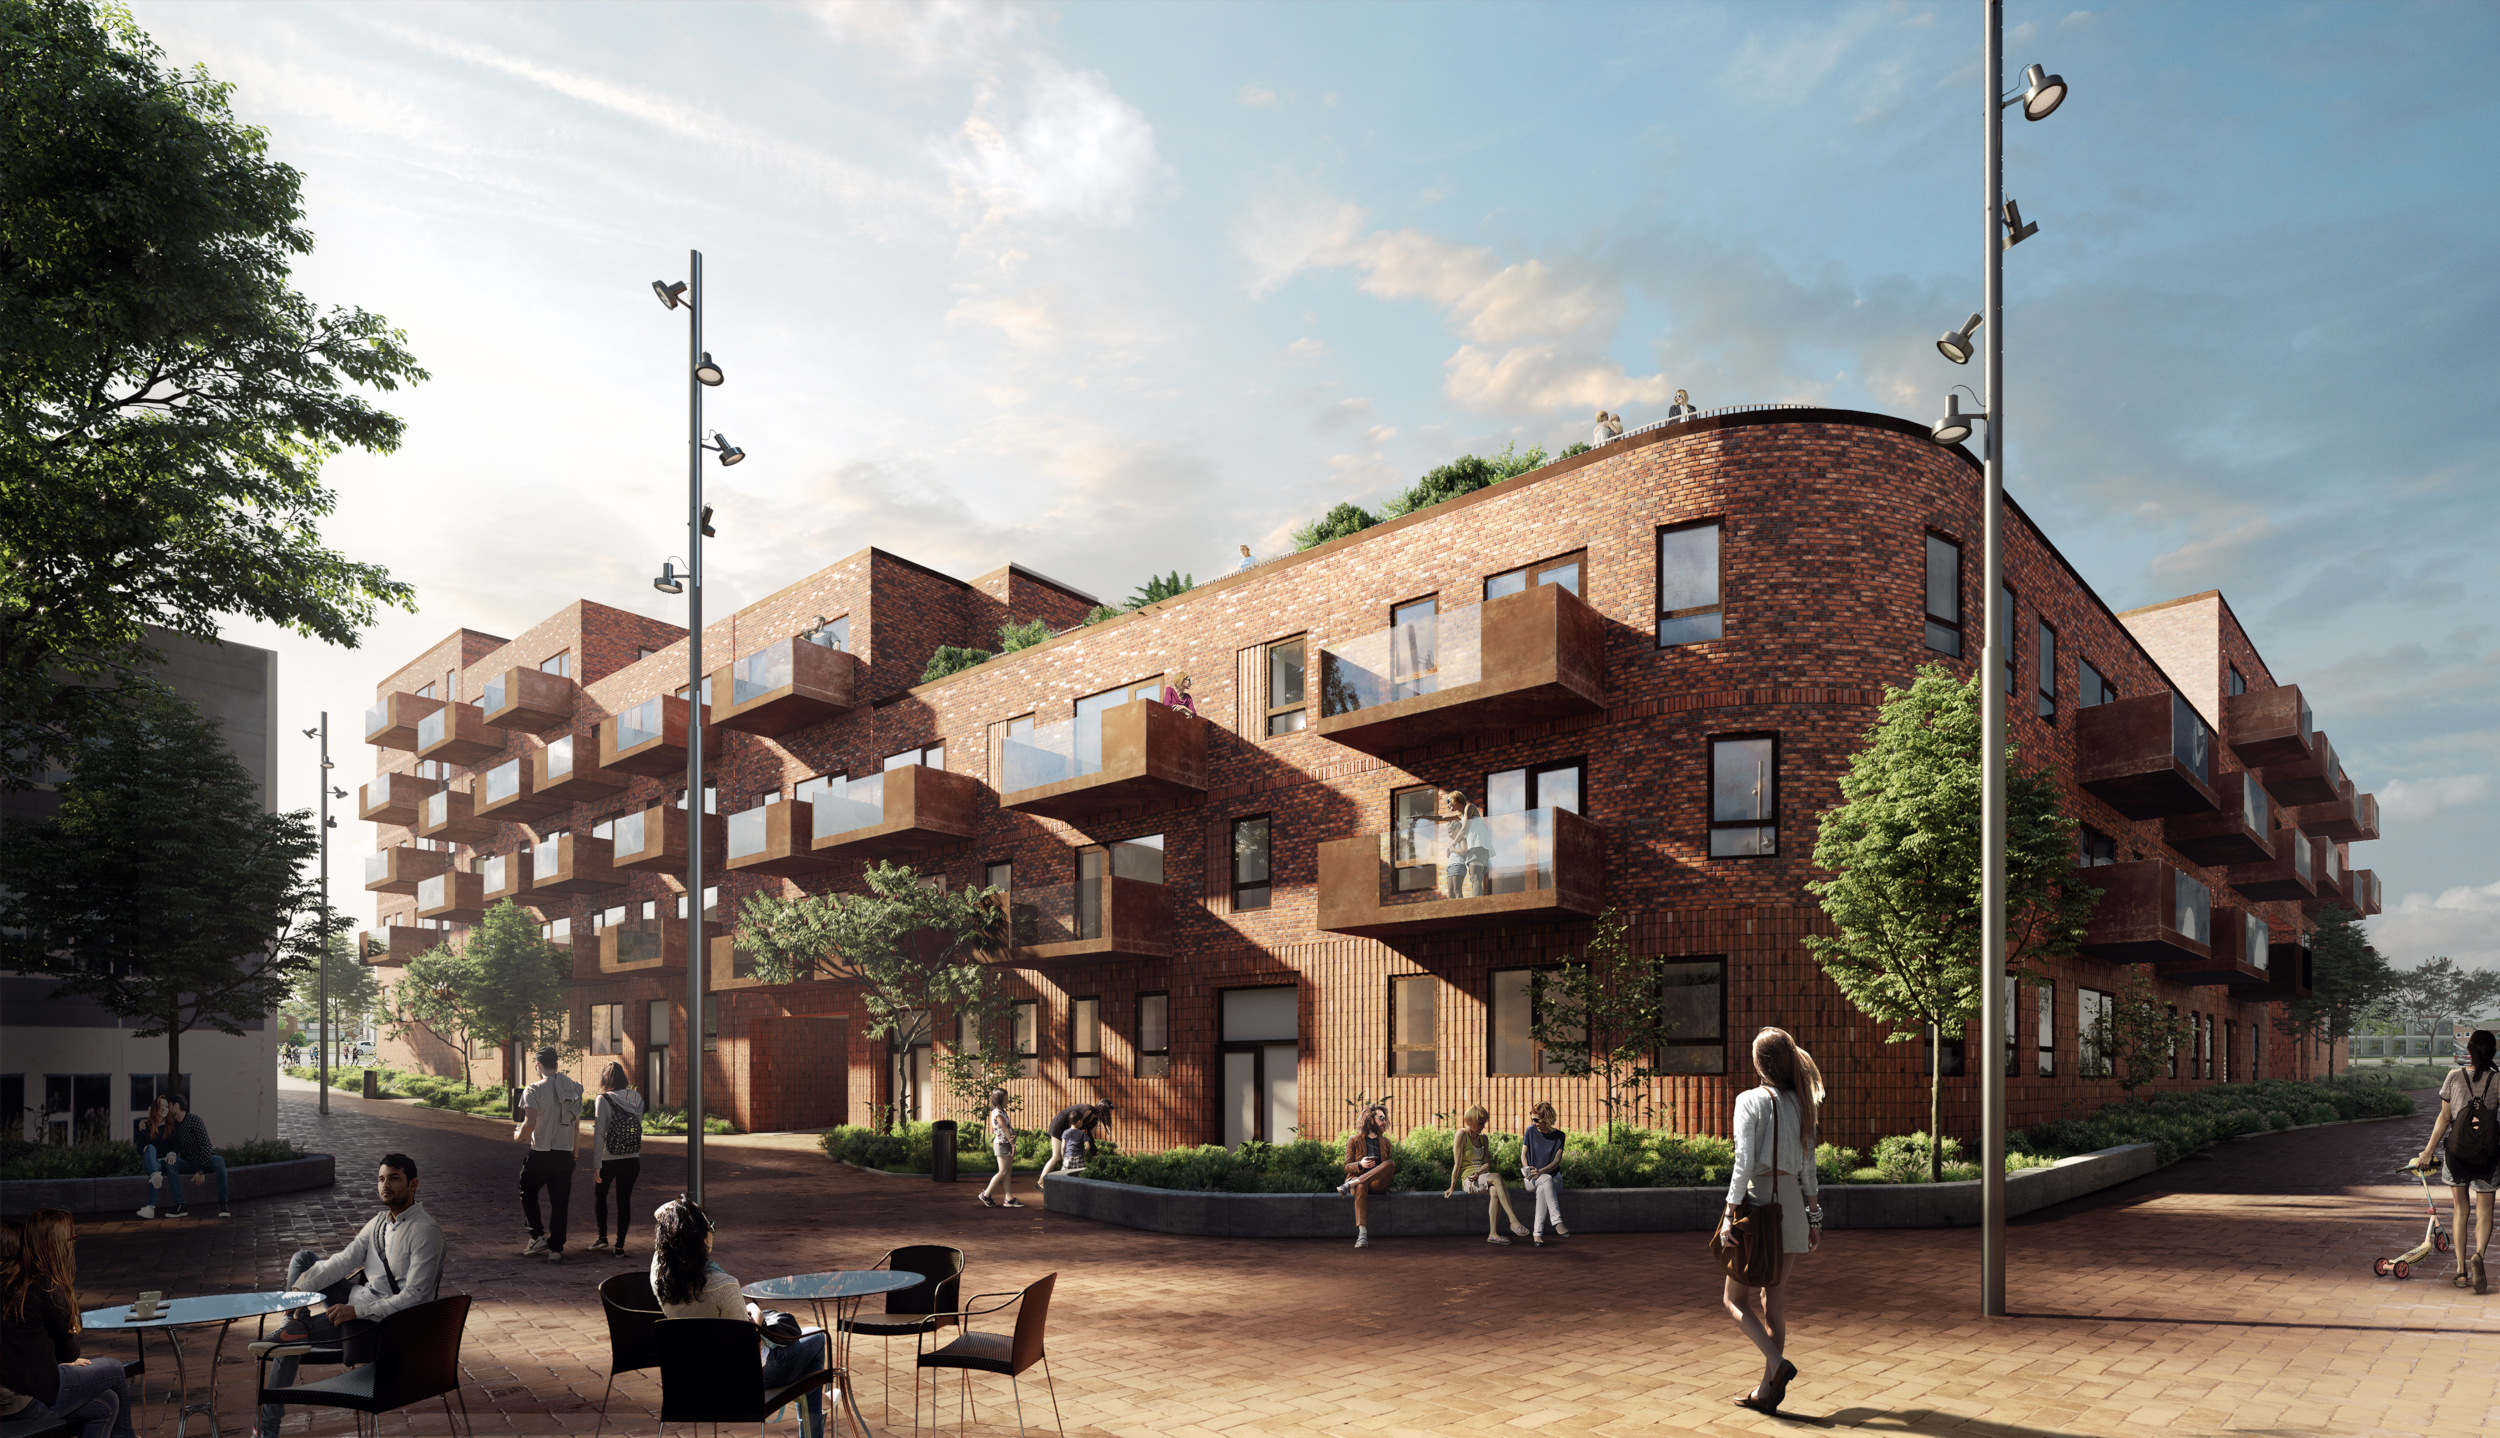 127 boliger vej i Hillerød - Building Supply DK